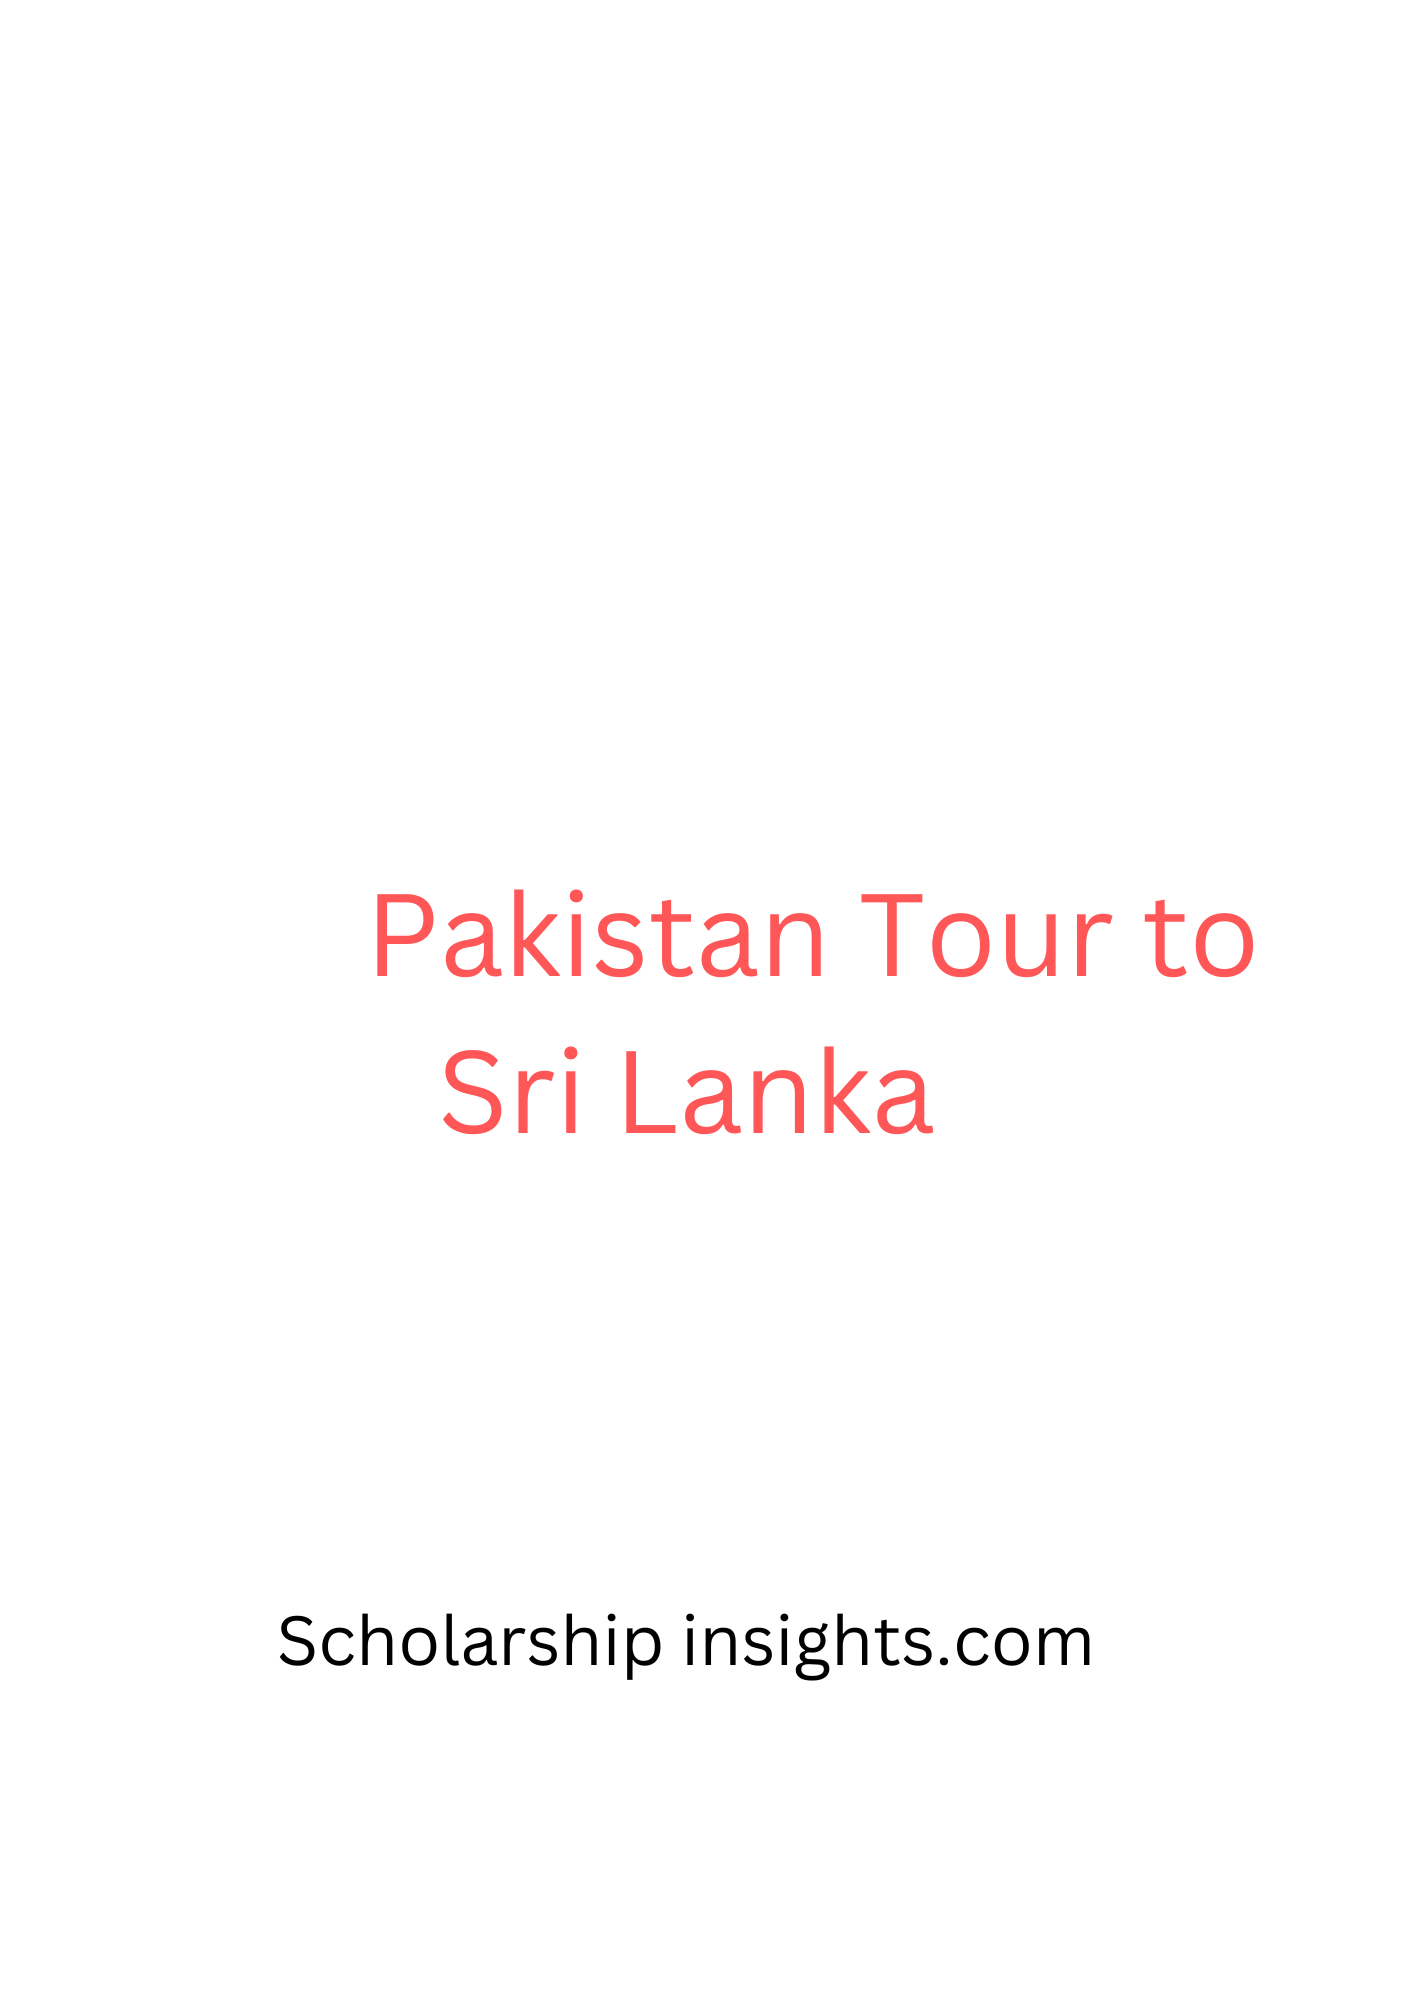 tour to sri lanka from pakistan